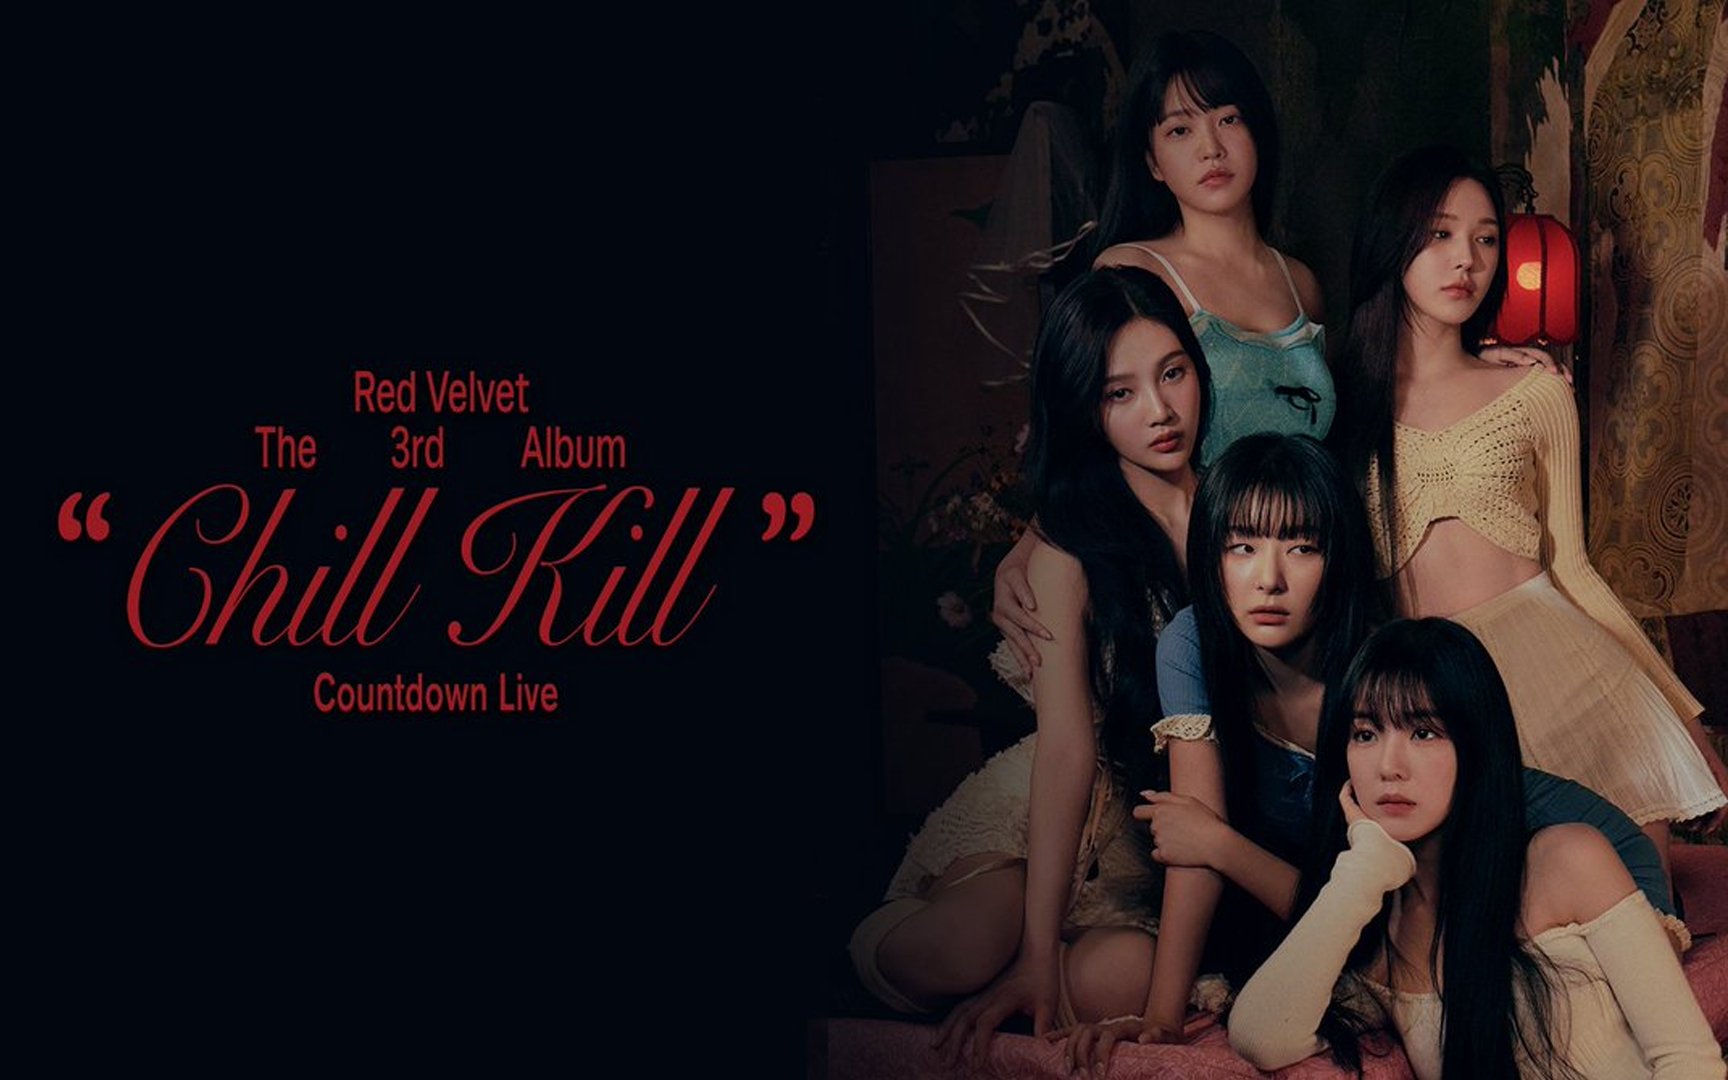 Los internautas aplauden la decisión de Red Velvet de evitar una canción del “TikTok Challenge” con el impresionante “Chill Kill”